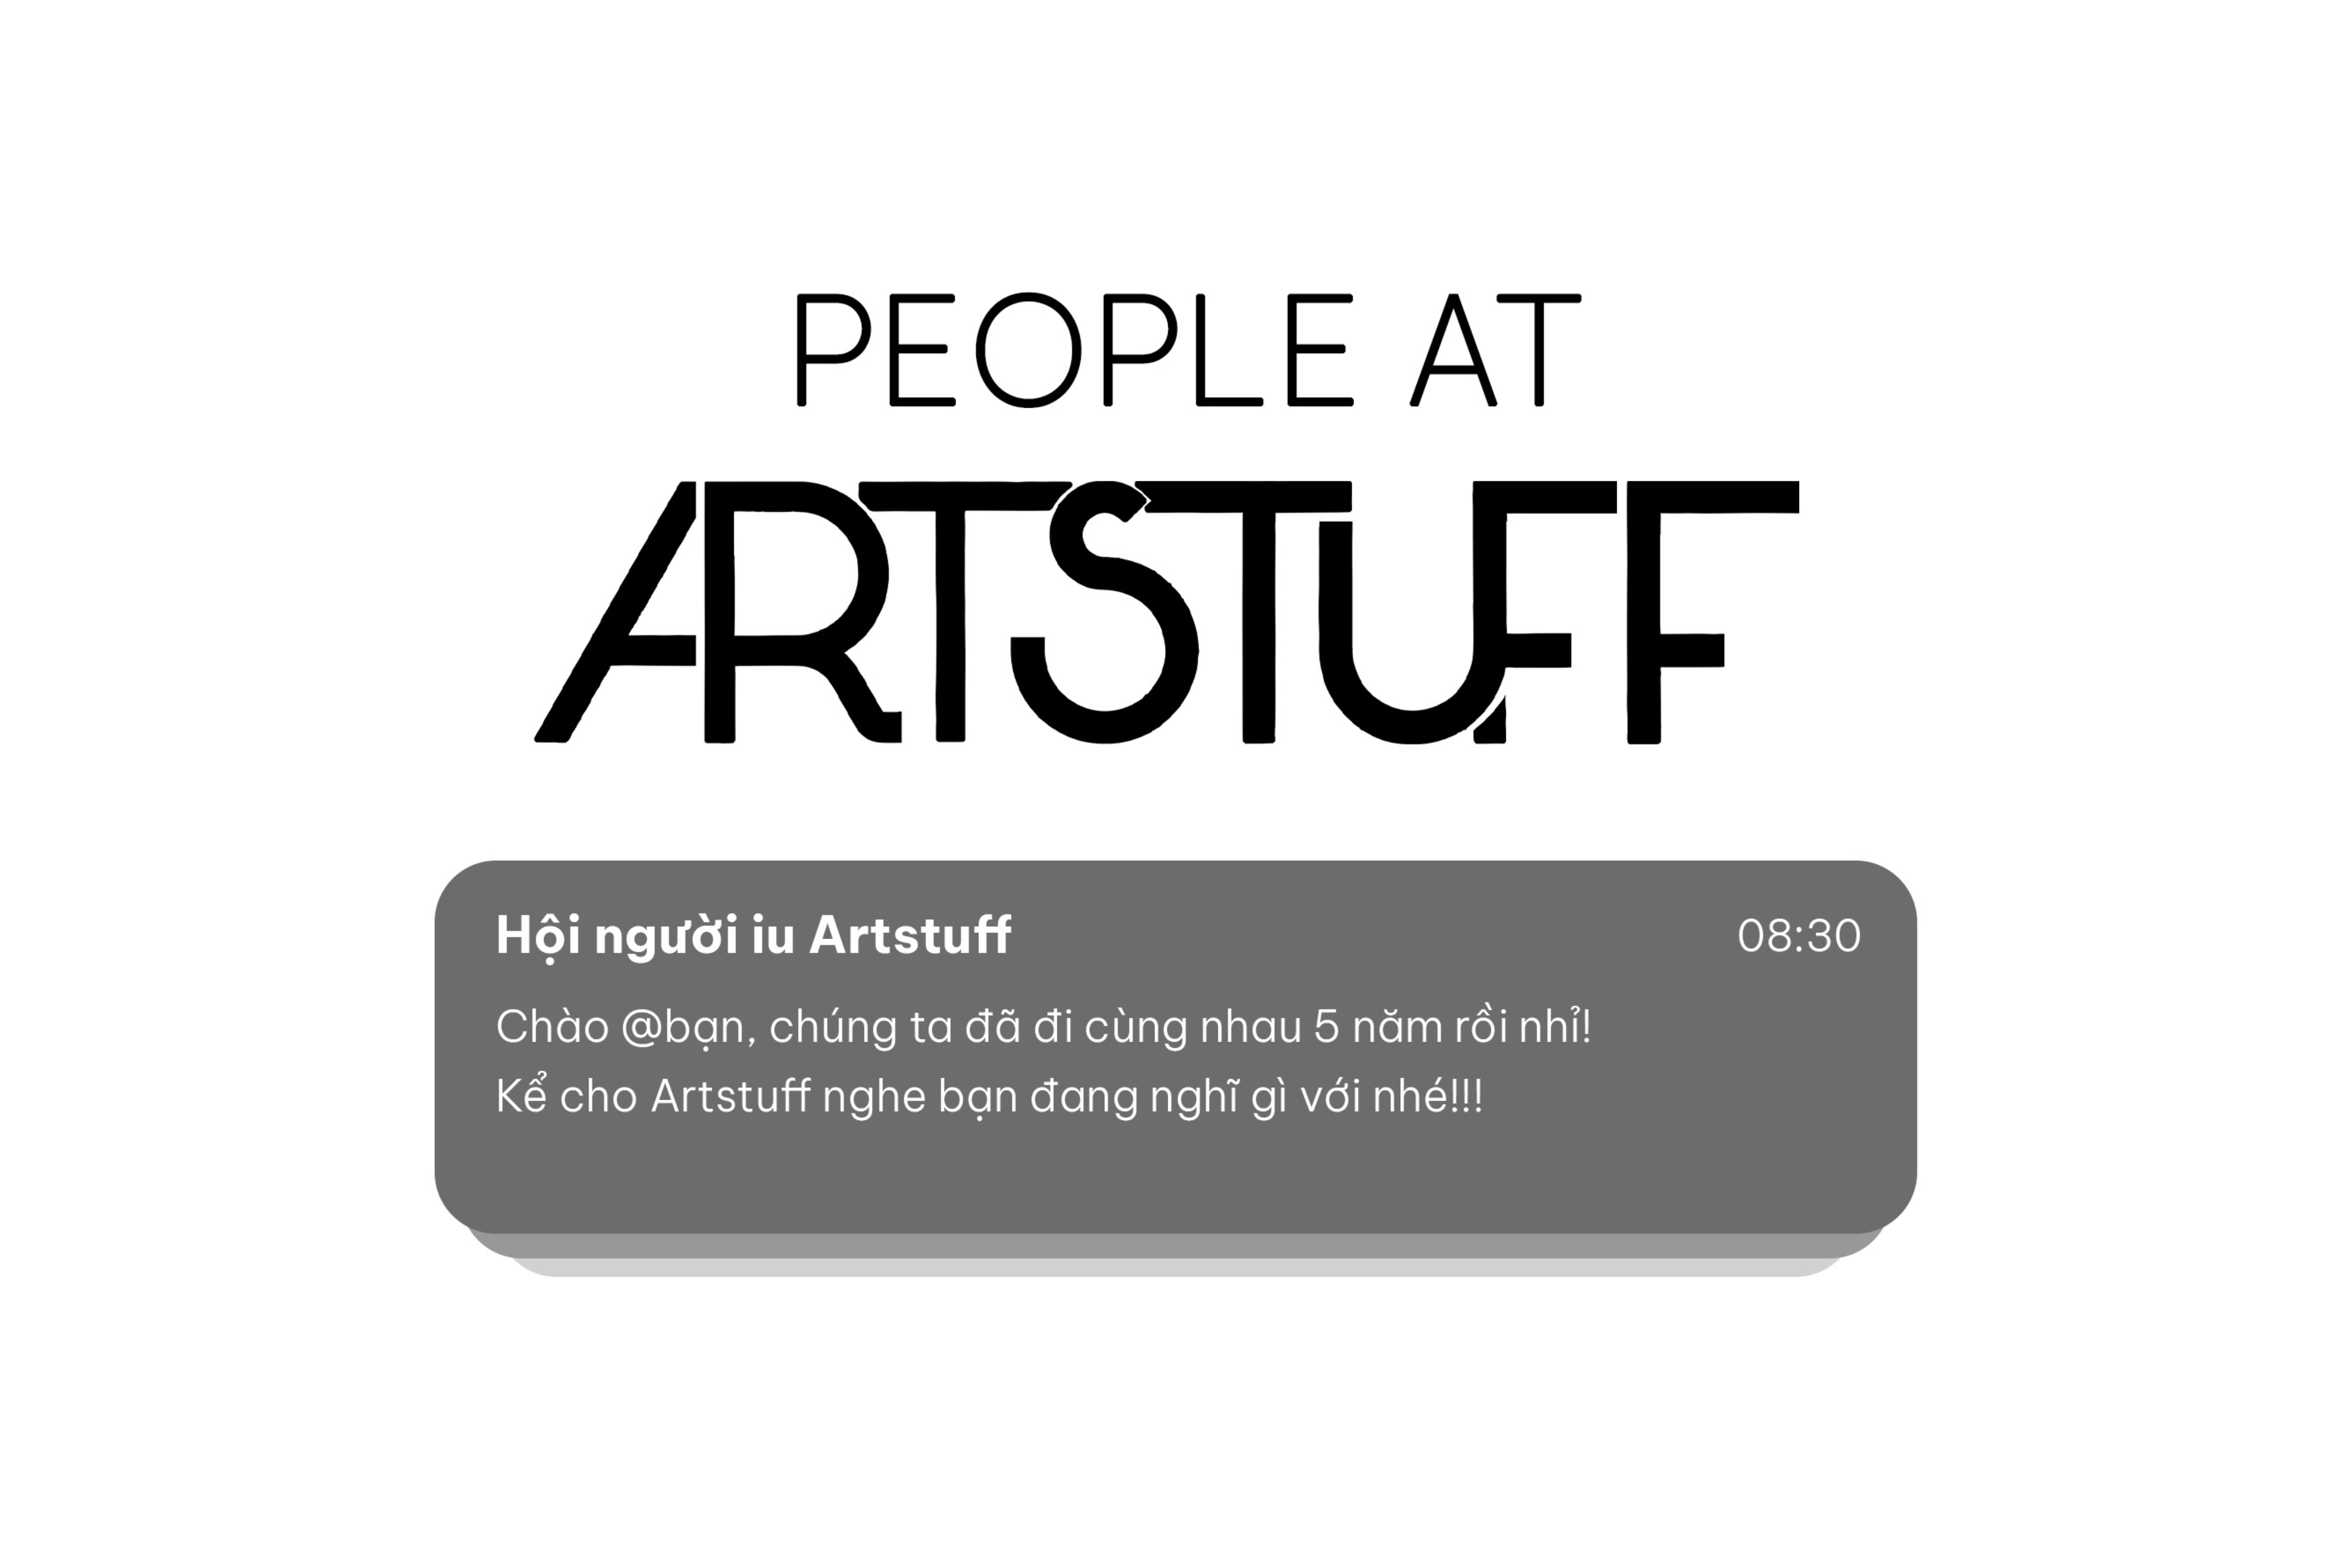 People at Artstuff: Trò chuyện ngắn cùng các thành viên